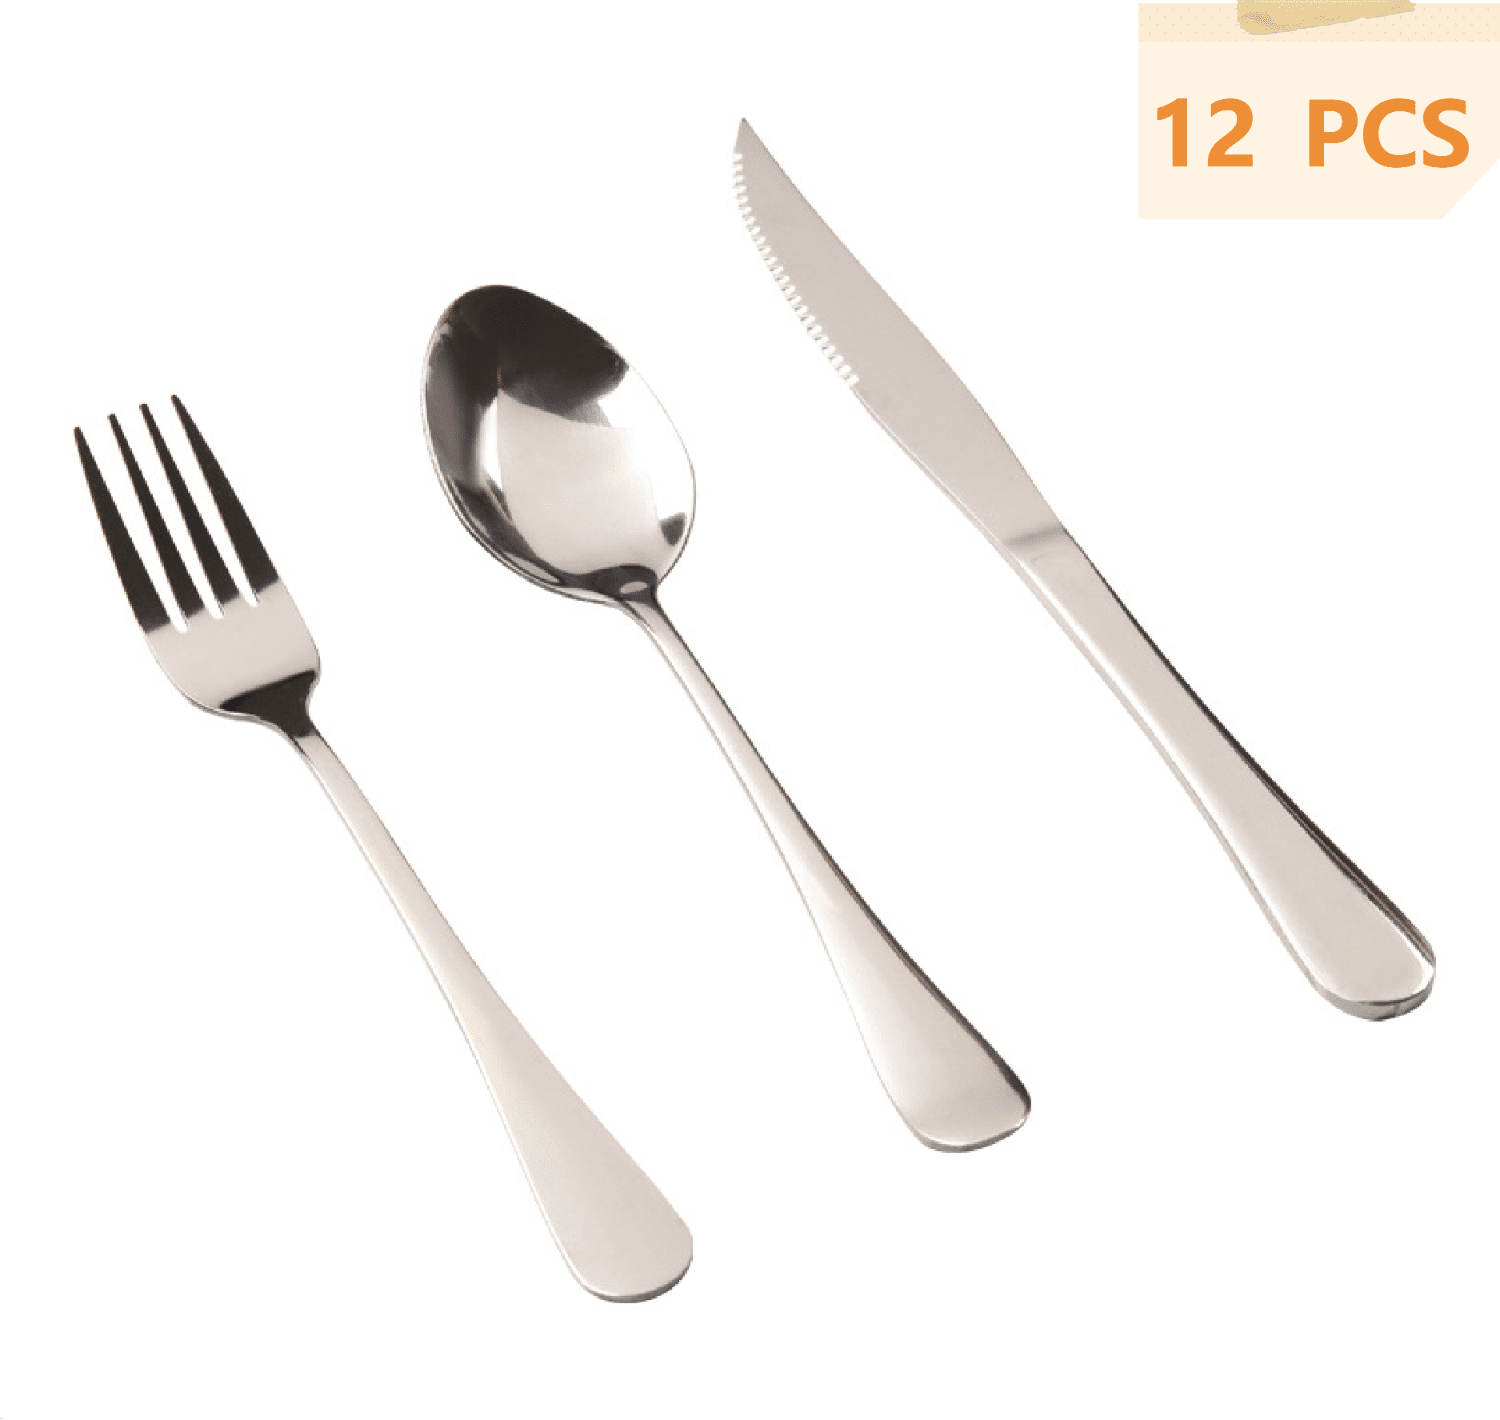 JMH 30-Piece Silverware Flatware Sets Dinner Knife Fork Spoon 3